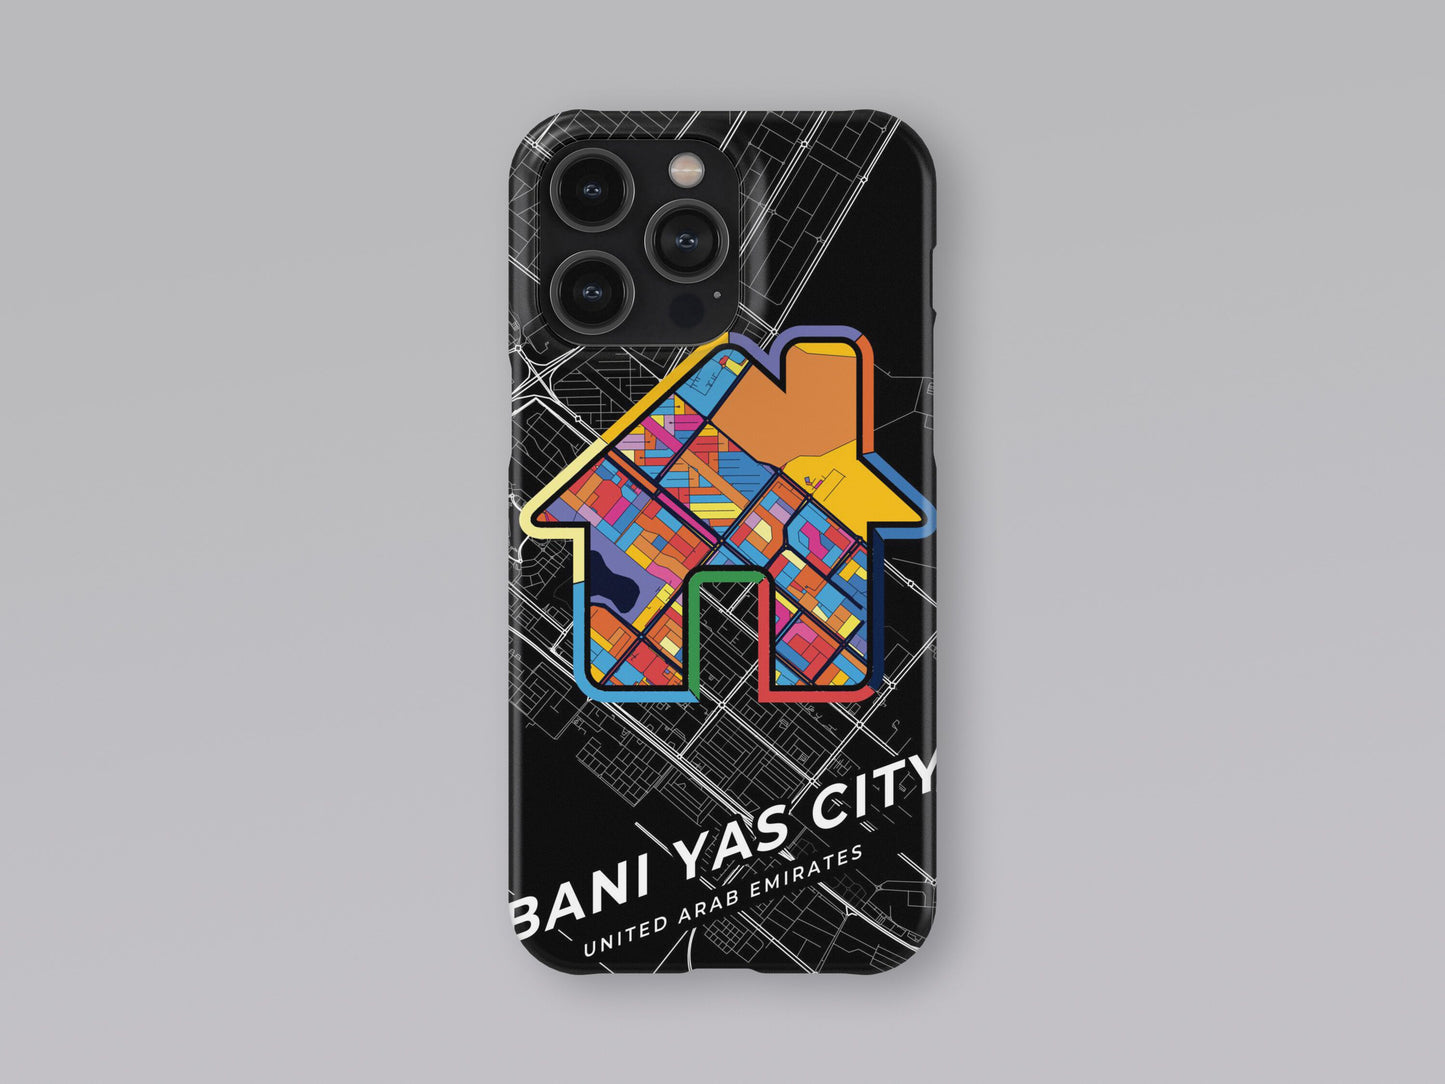 Bani Yas City United Arab Emirates slim phone case with colorful icon. Birthday, wedding or housewarming gift. Couple match cases. 3